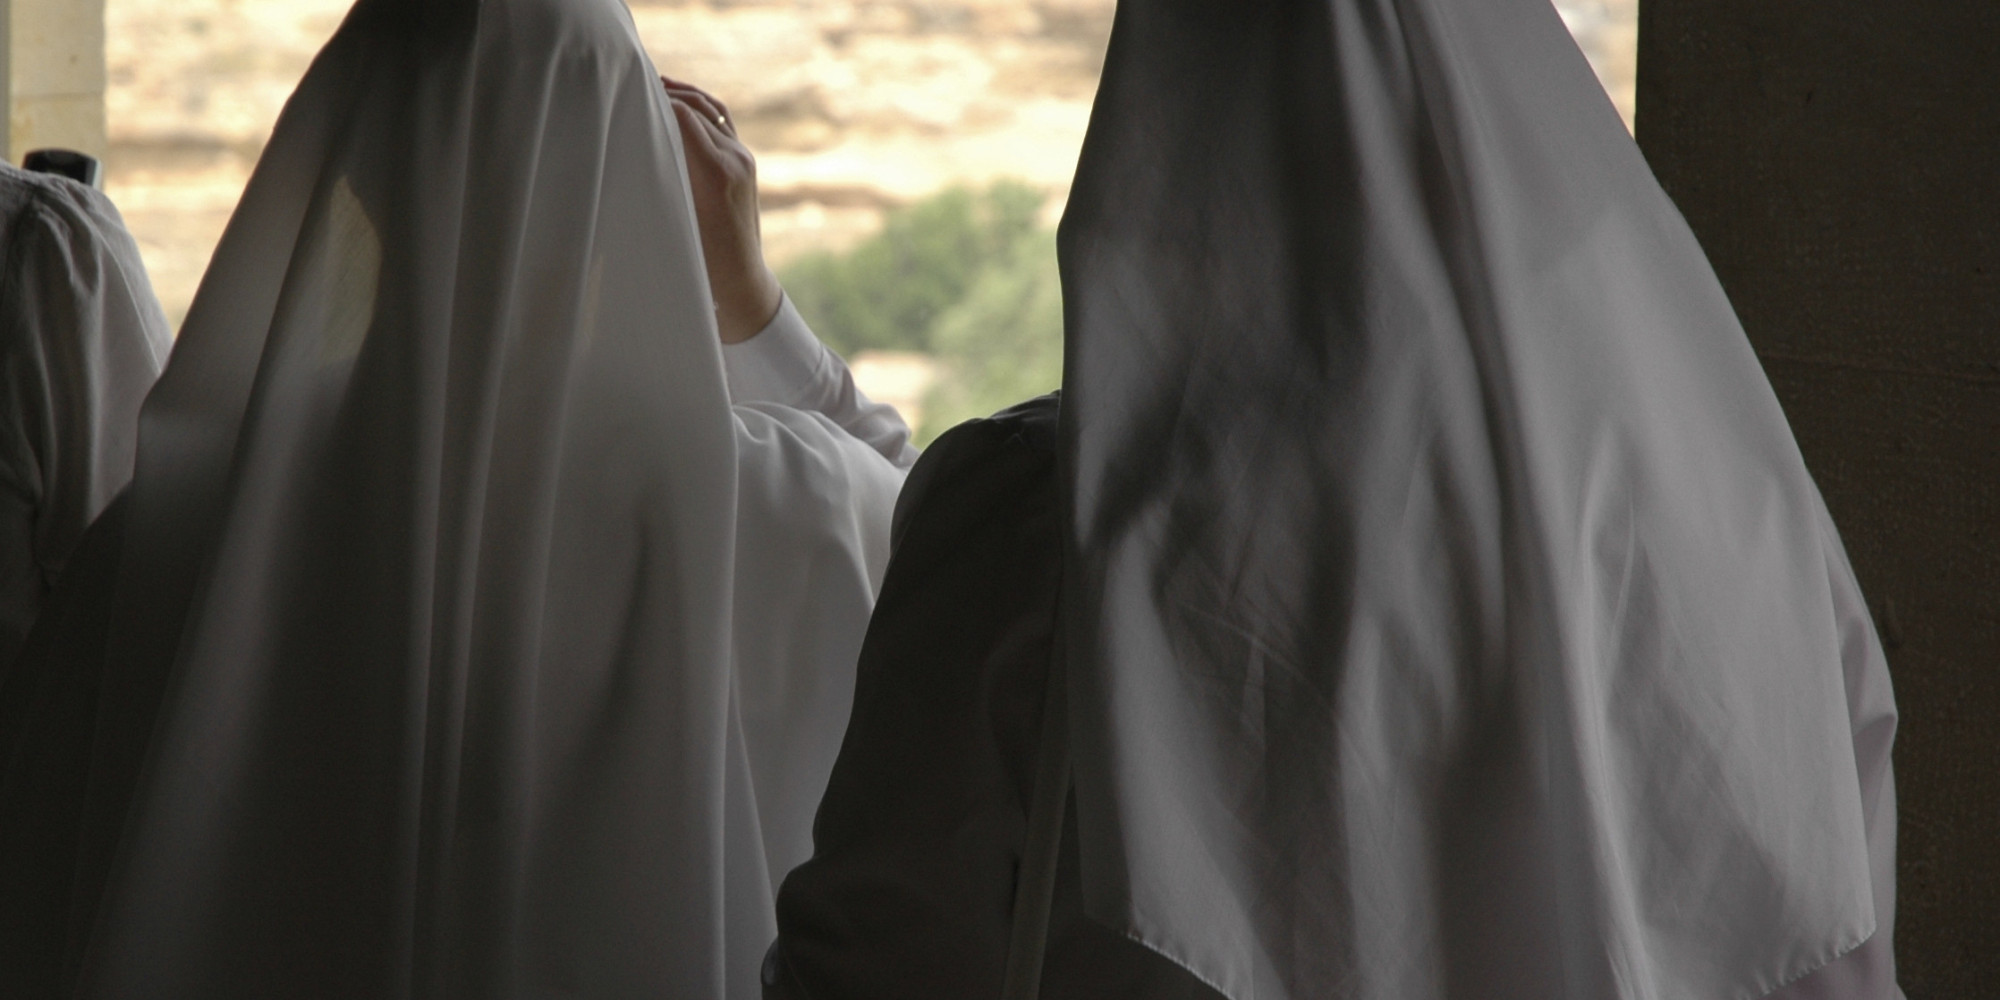 Dos monjas cuelgan los hábitos para casarse